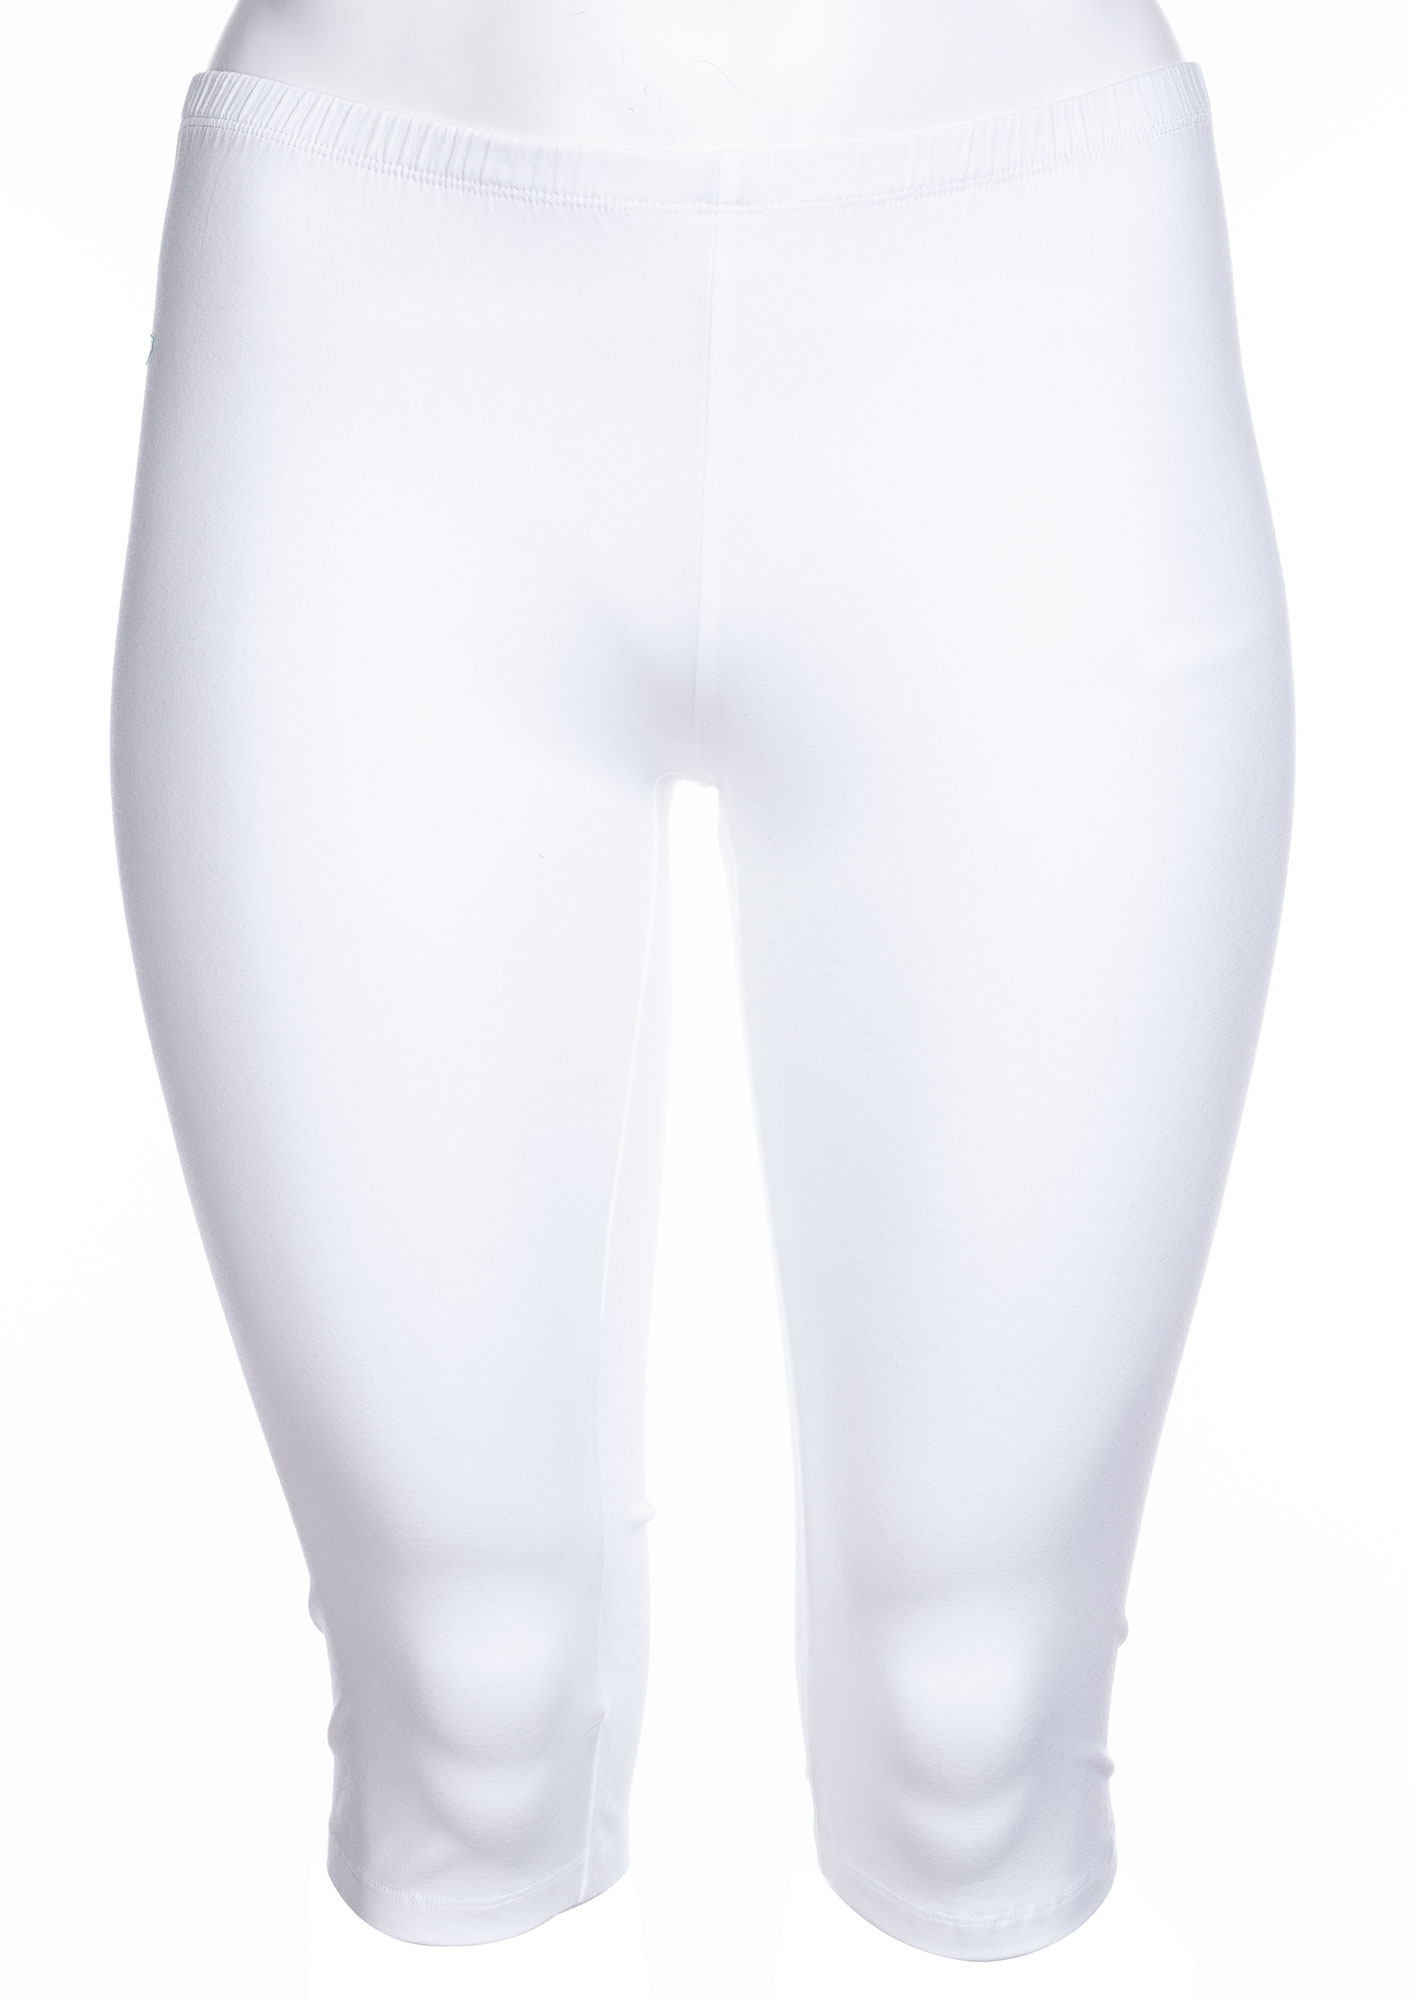 KANT - Hvide capri leggings med rynke-effekt fra Zhenzi